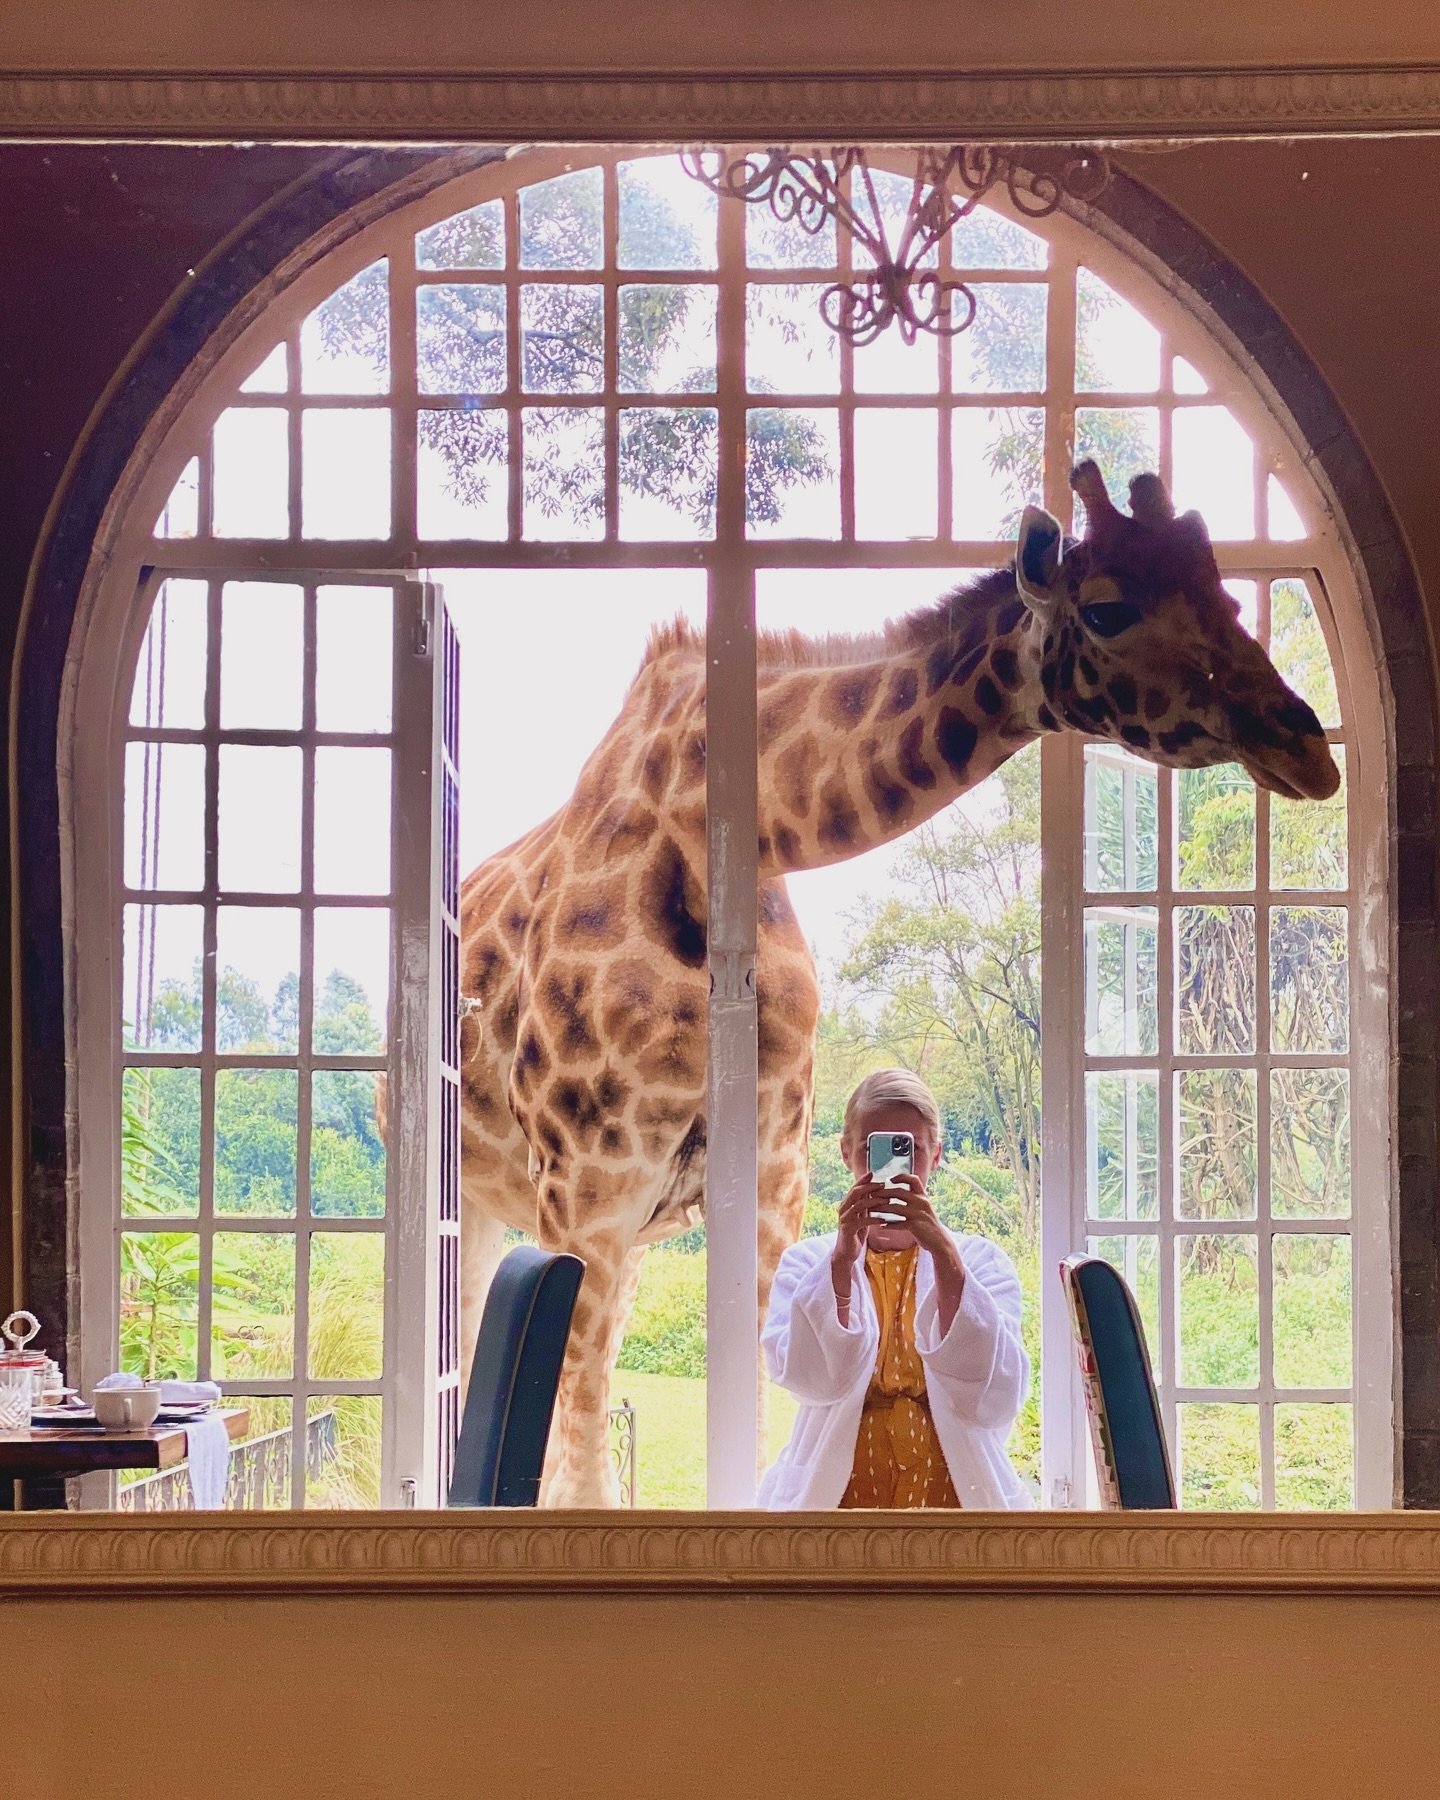 A Nairobi moment - brunch with giraffes 🦒 
#kenyaliving